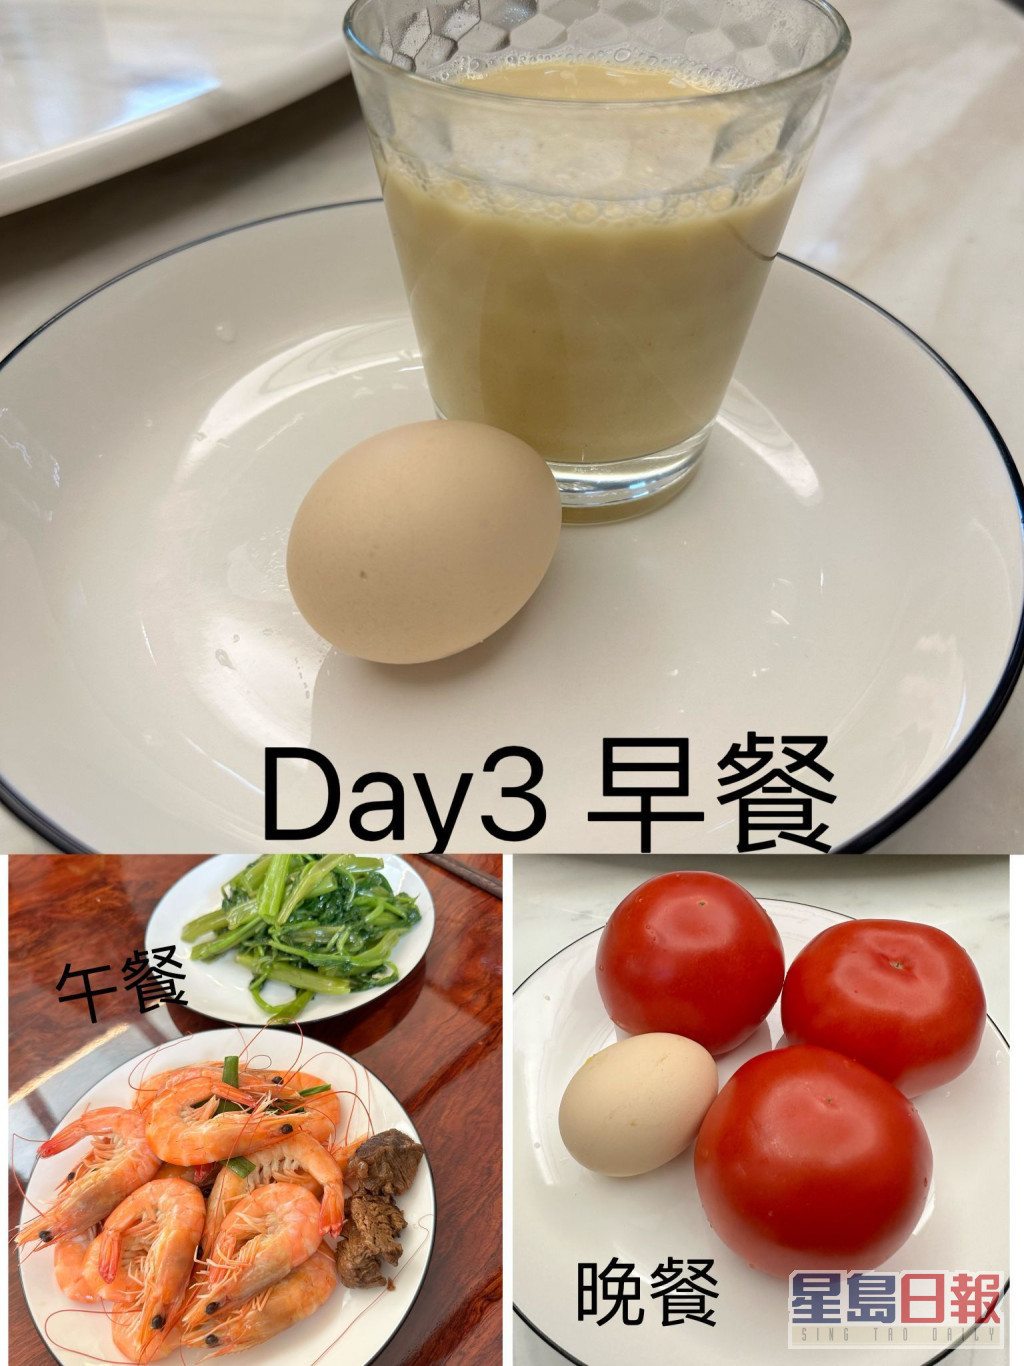 第三日早餐：无糖豆浆加1烚蛋；午餐：灼通菜和白灼虾，仲有偷食咗两粒牛肉；晚餐3生蕃茄和1烚蛋。